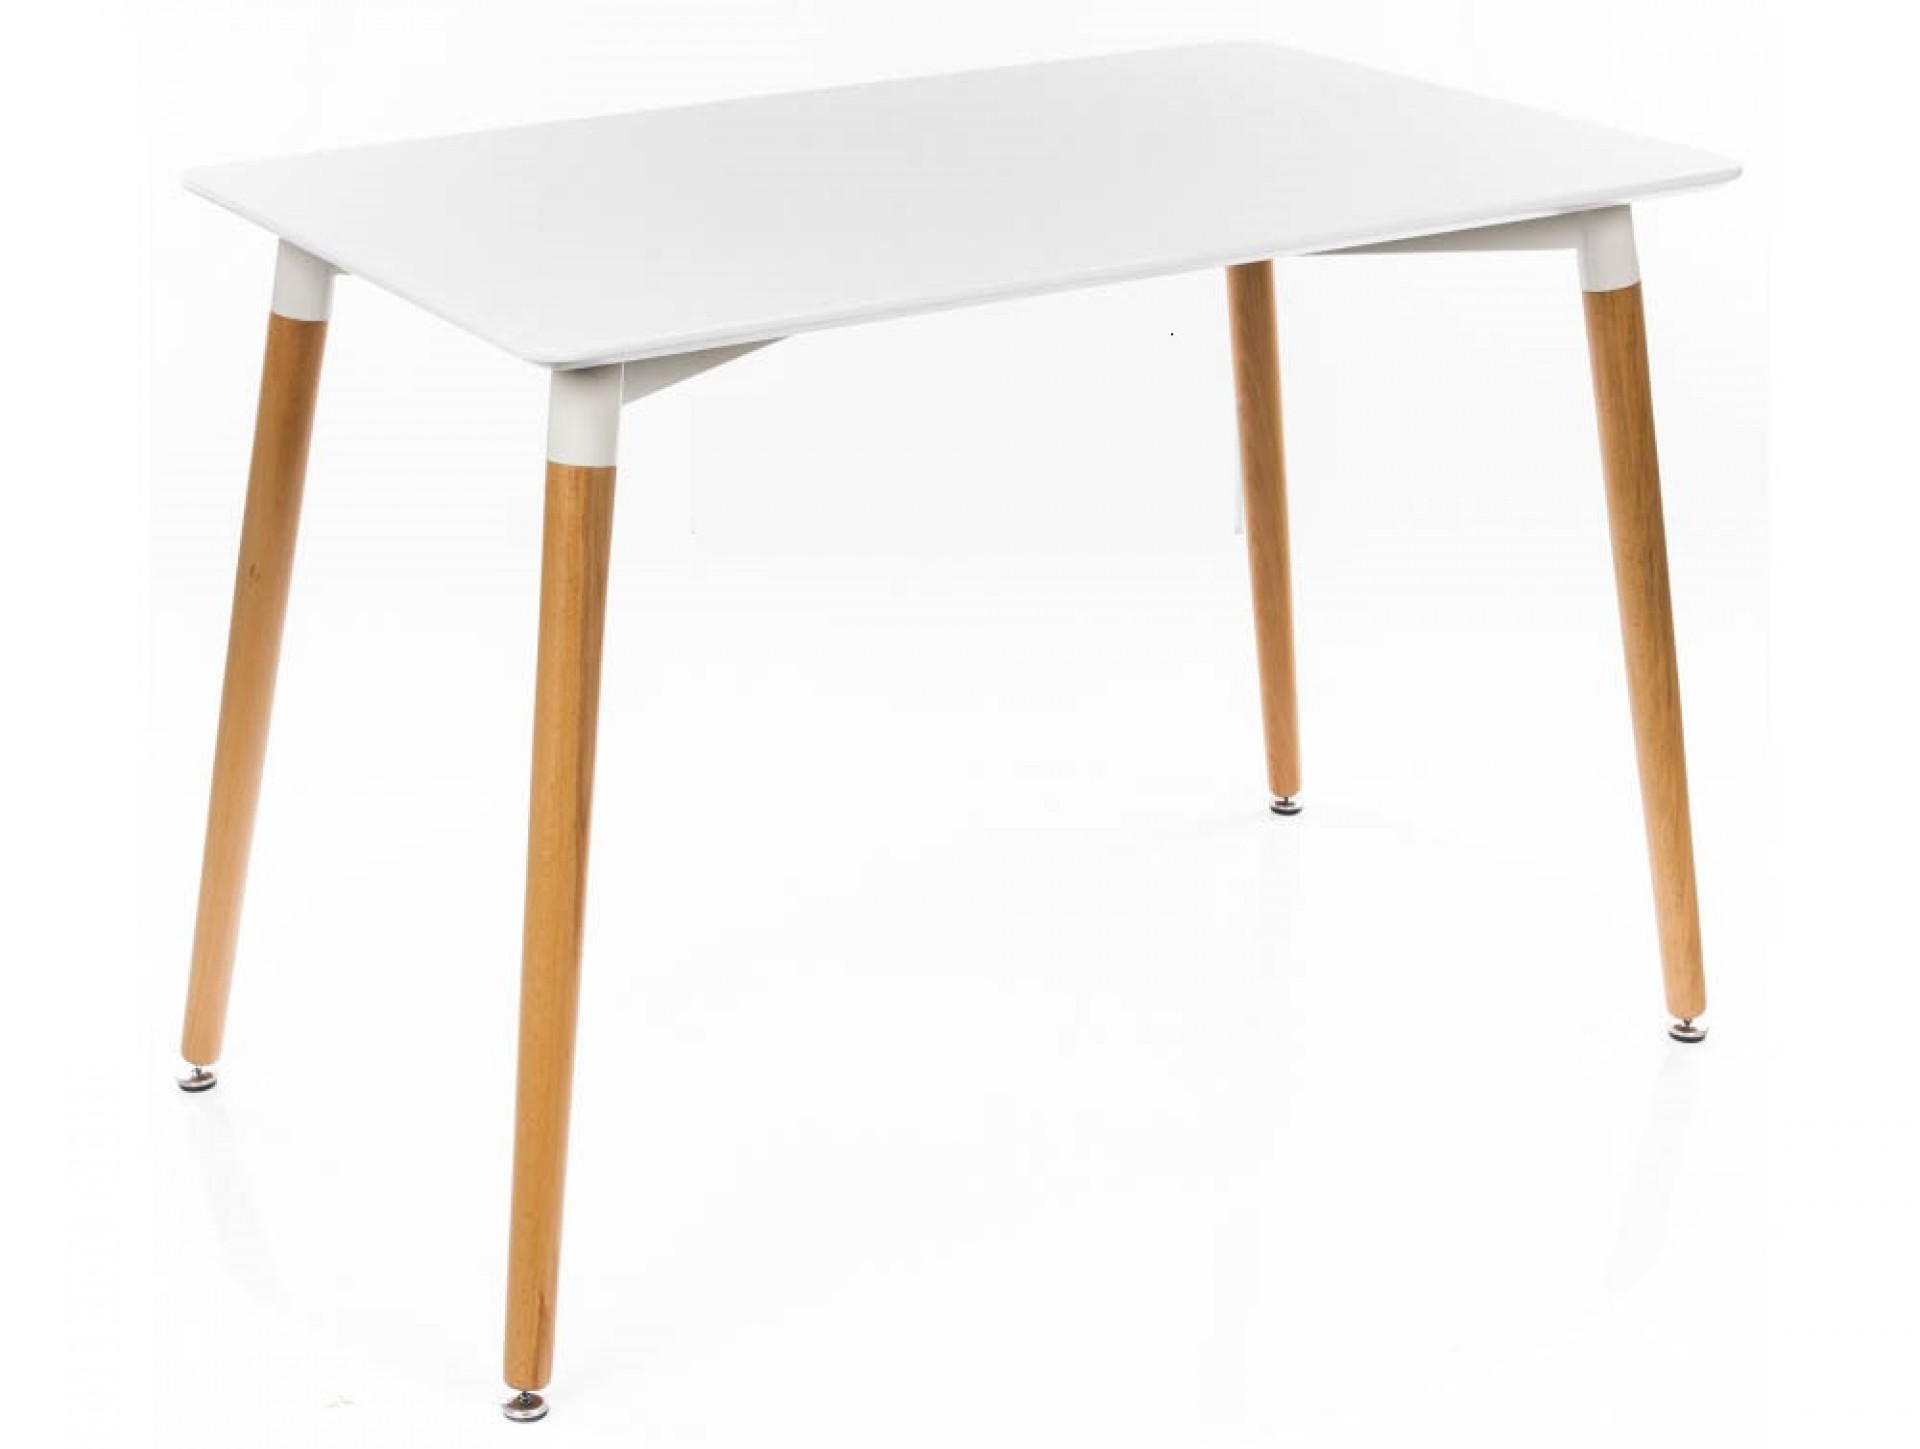 М сити столы. Стол Nord (1200*800*740 , МДФ, бук). DТ-04 (GH-t003) стол обеденный, белый 1200*800. Стол Woodville Table 80. Стол для кухни Tansy 120 белый.